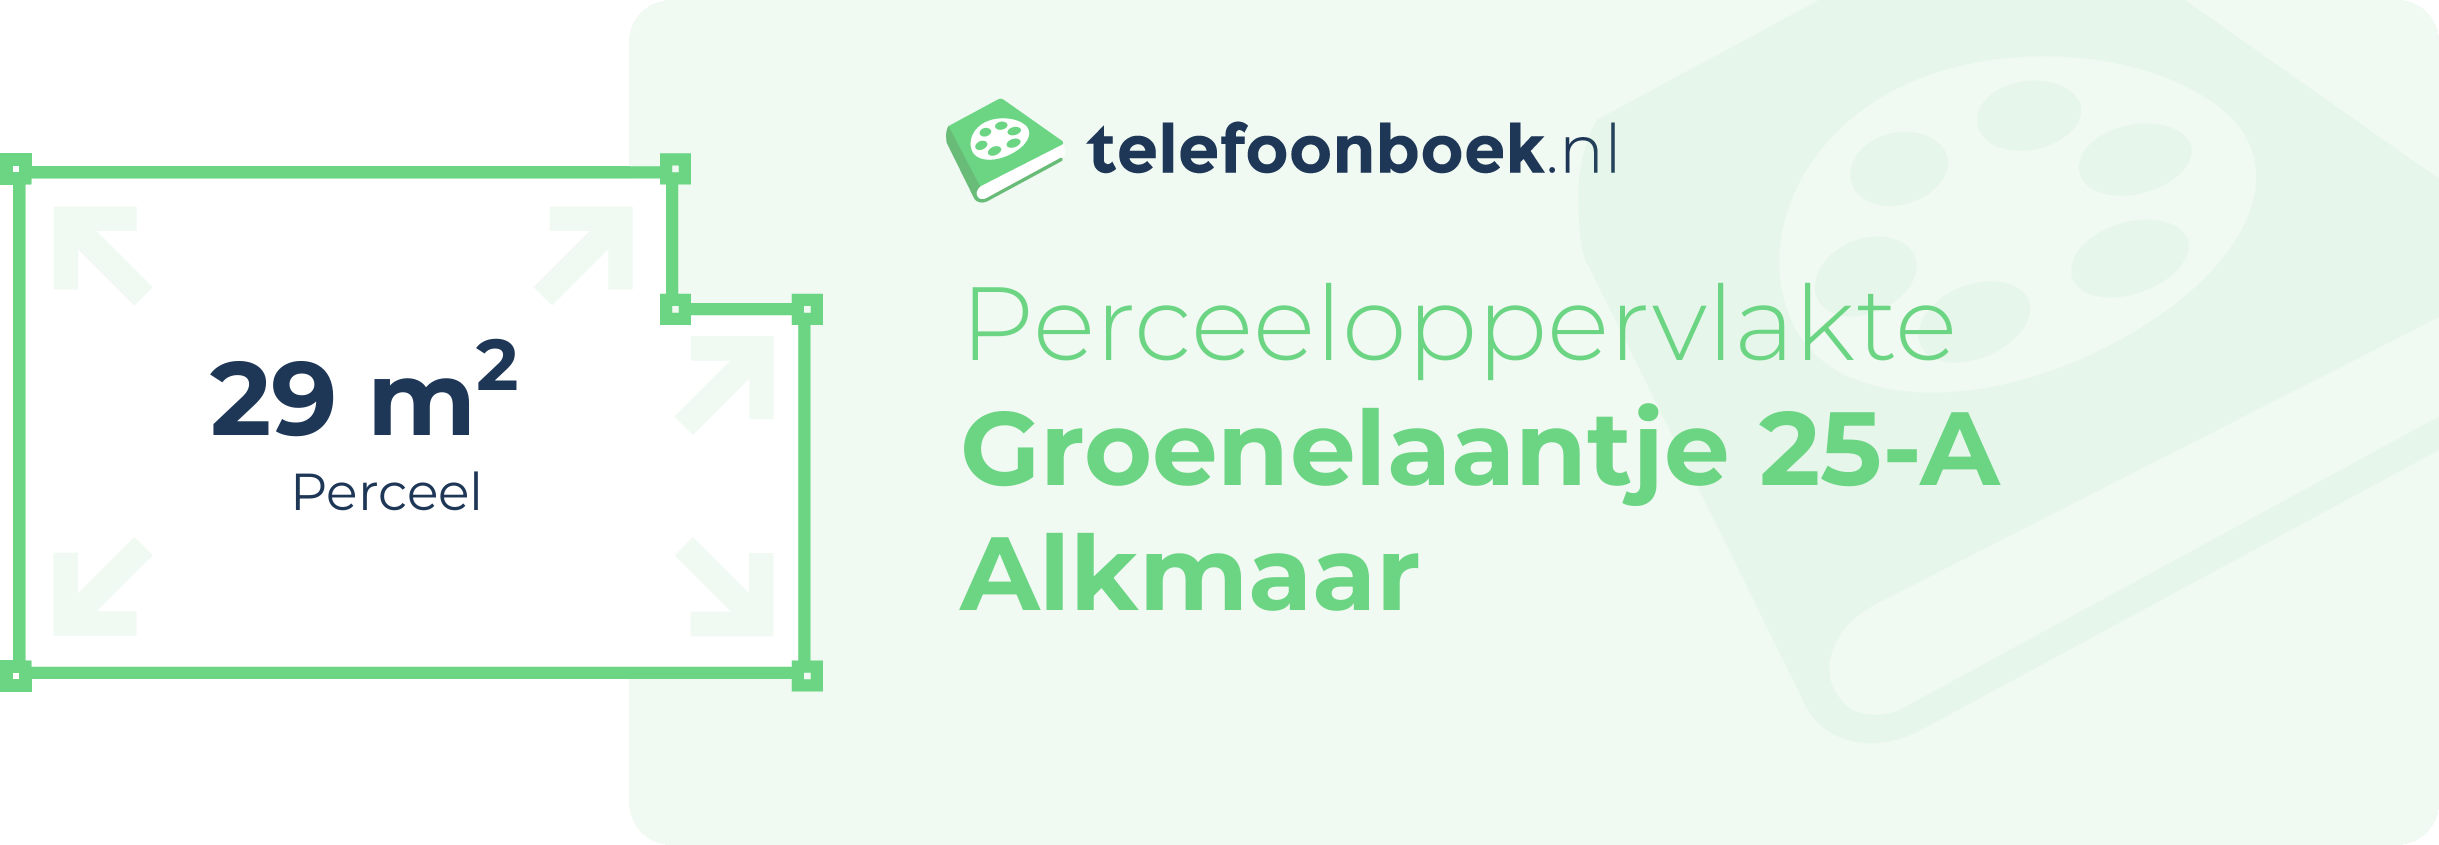 Perceeloppervlakte Groenelaantje 25-A Alkmaar